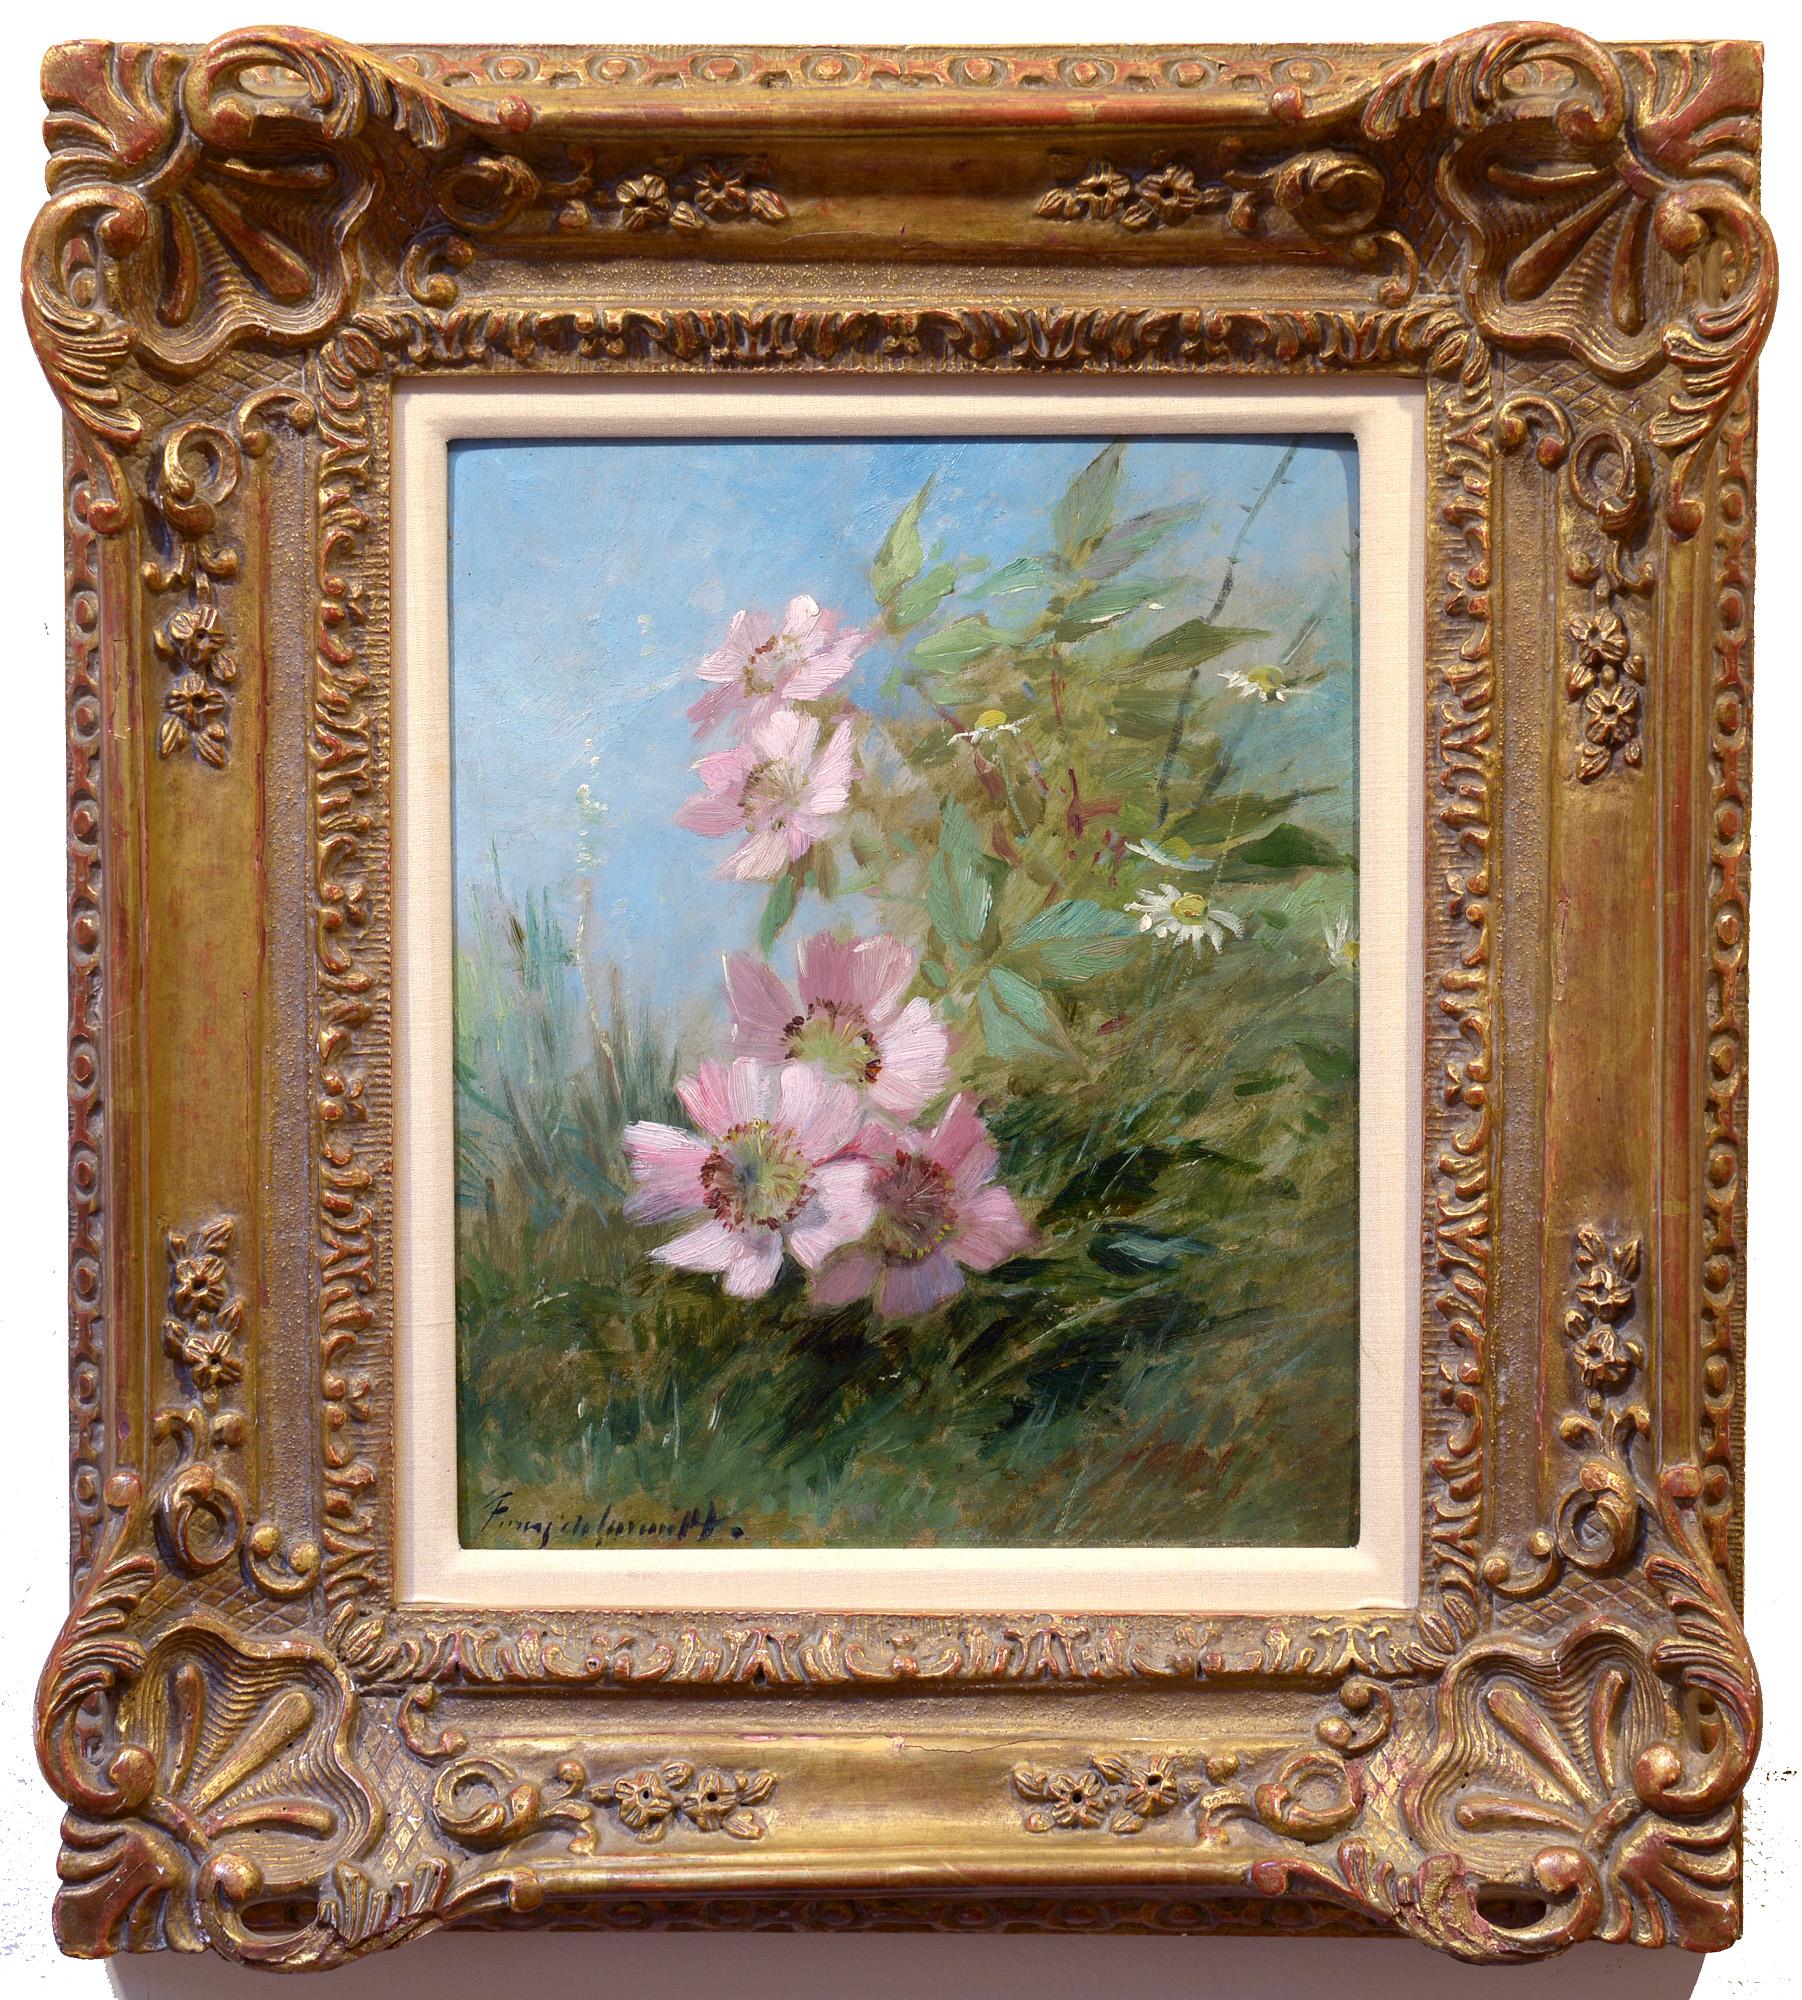 Fleurs sauvages, impressionniste, Nature, paysage, huile sur toile - Painting de Albert Tibule Furcy de Lavault 